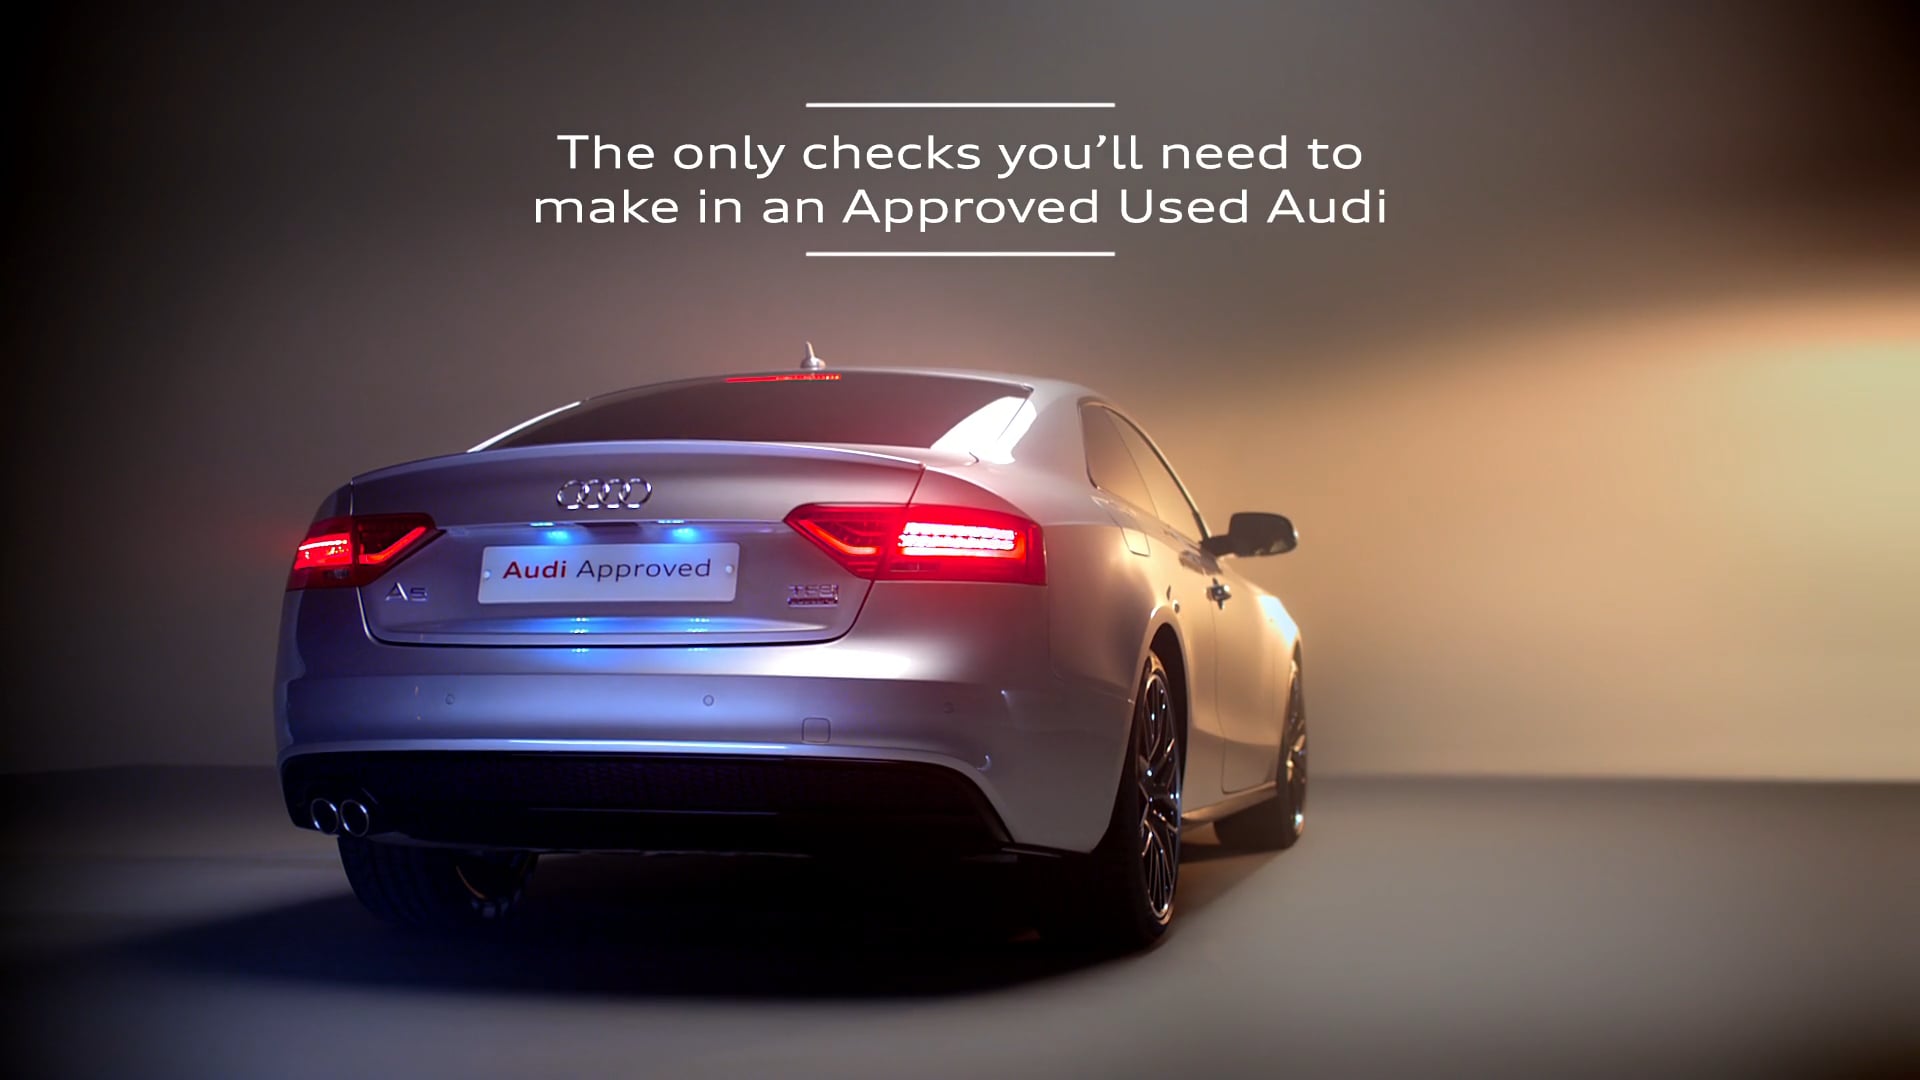 Audi - Checks